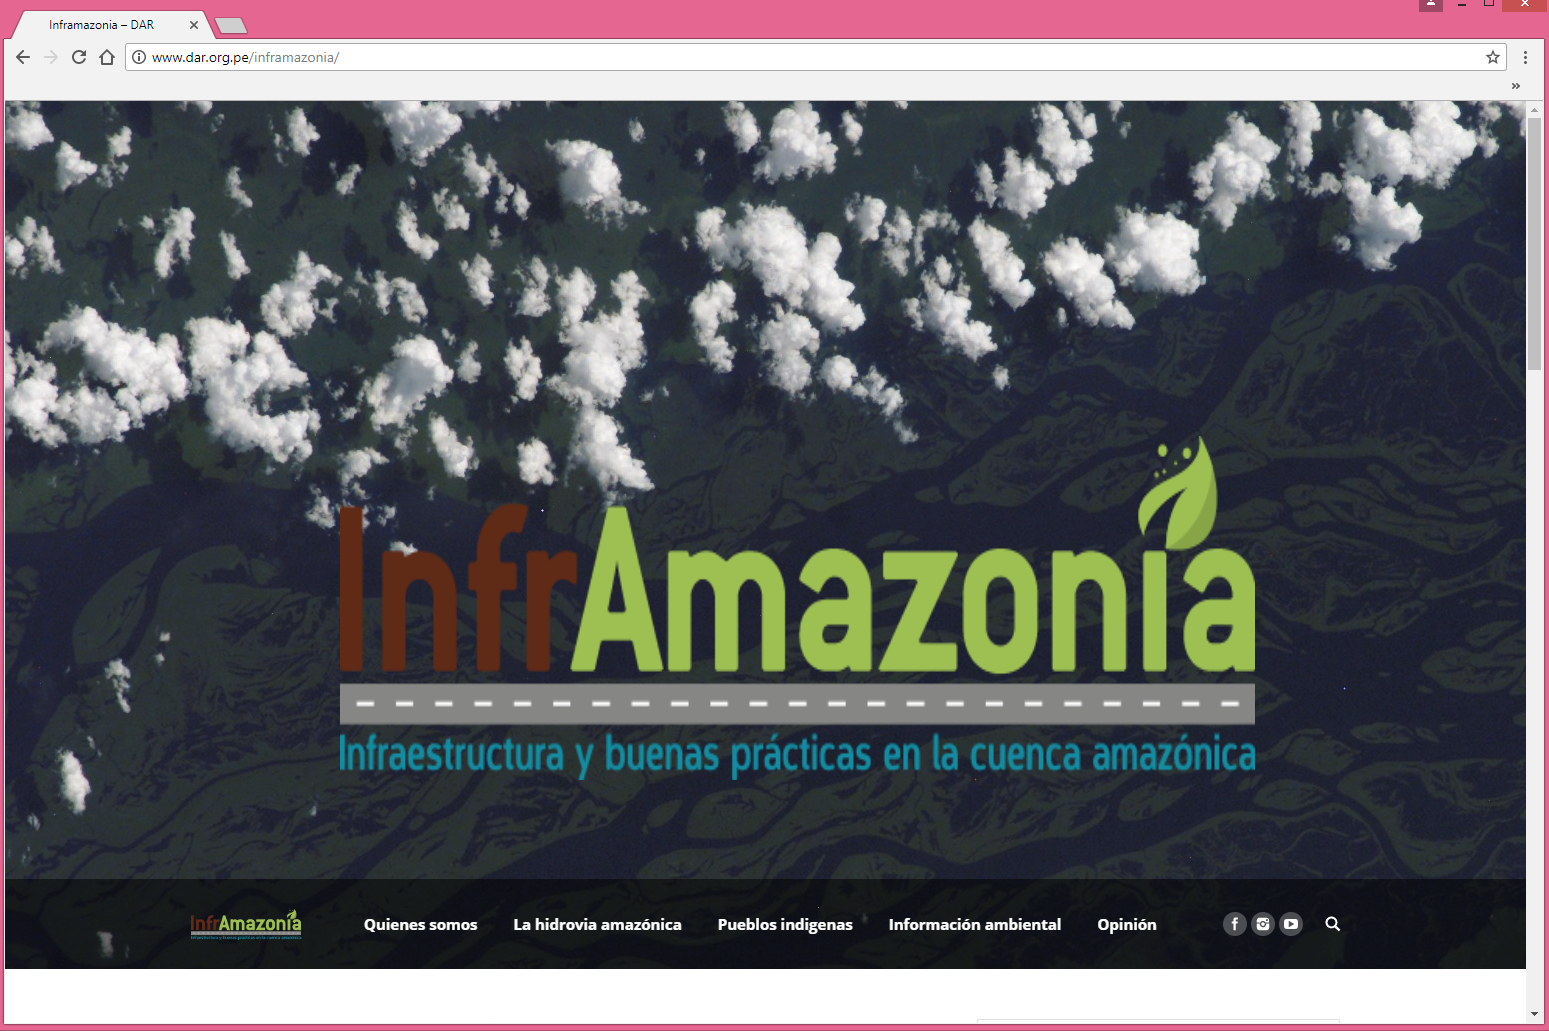 Infraestructura y buenas prácticas en la cuenca amazónica a solo un clic